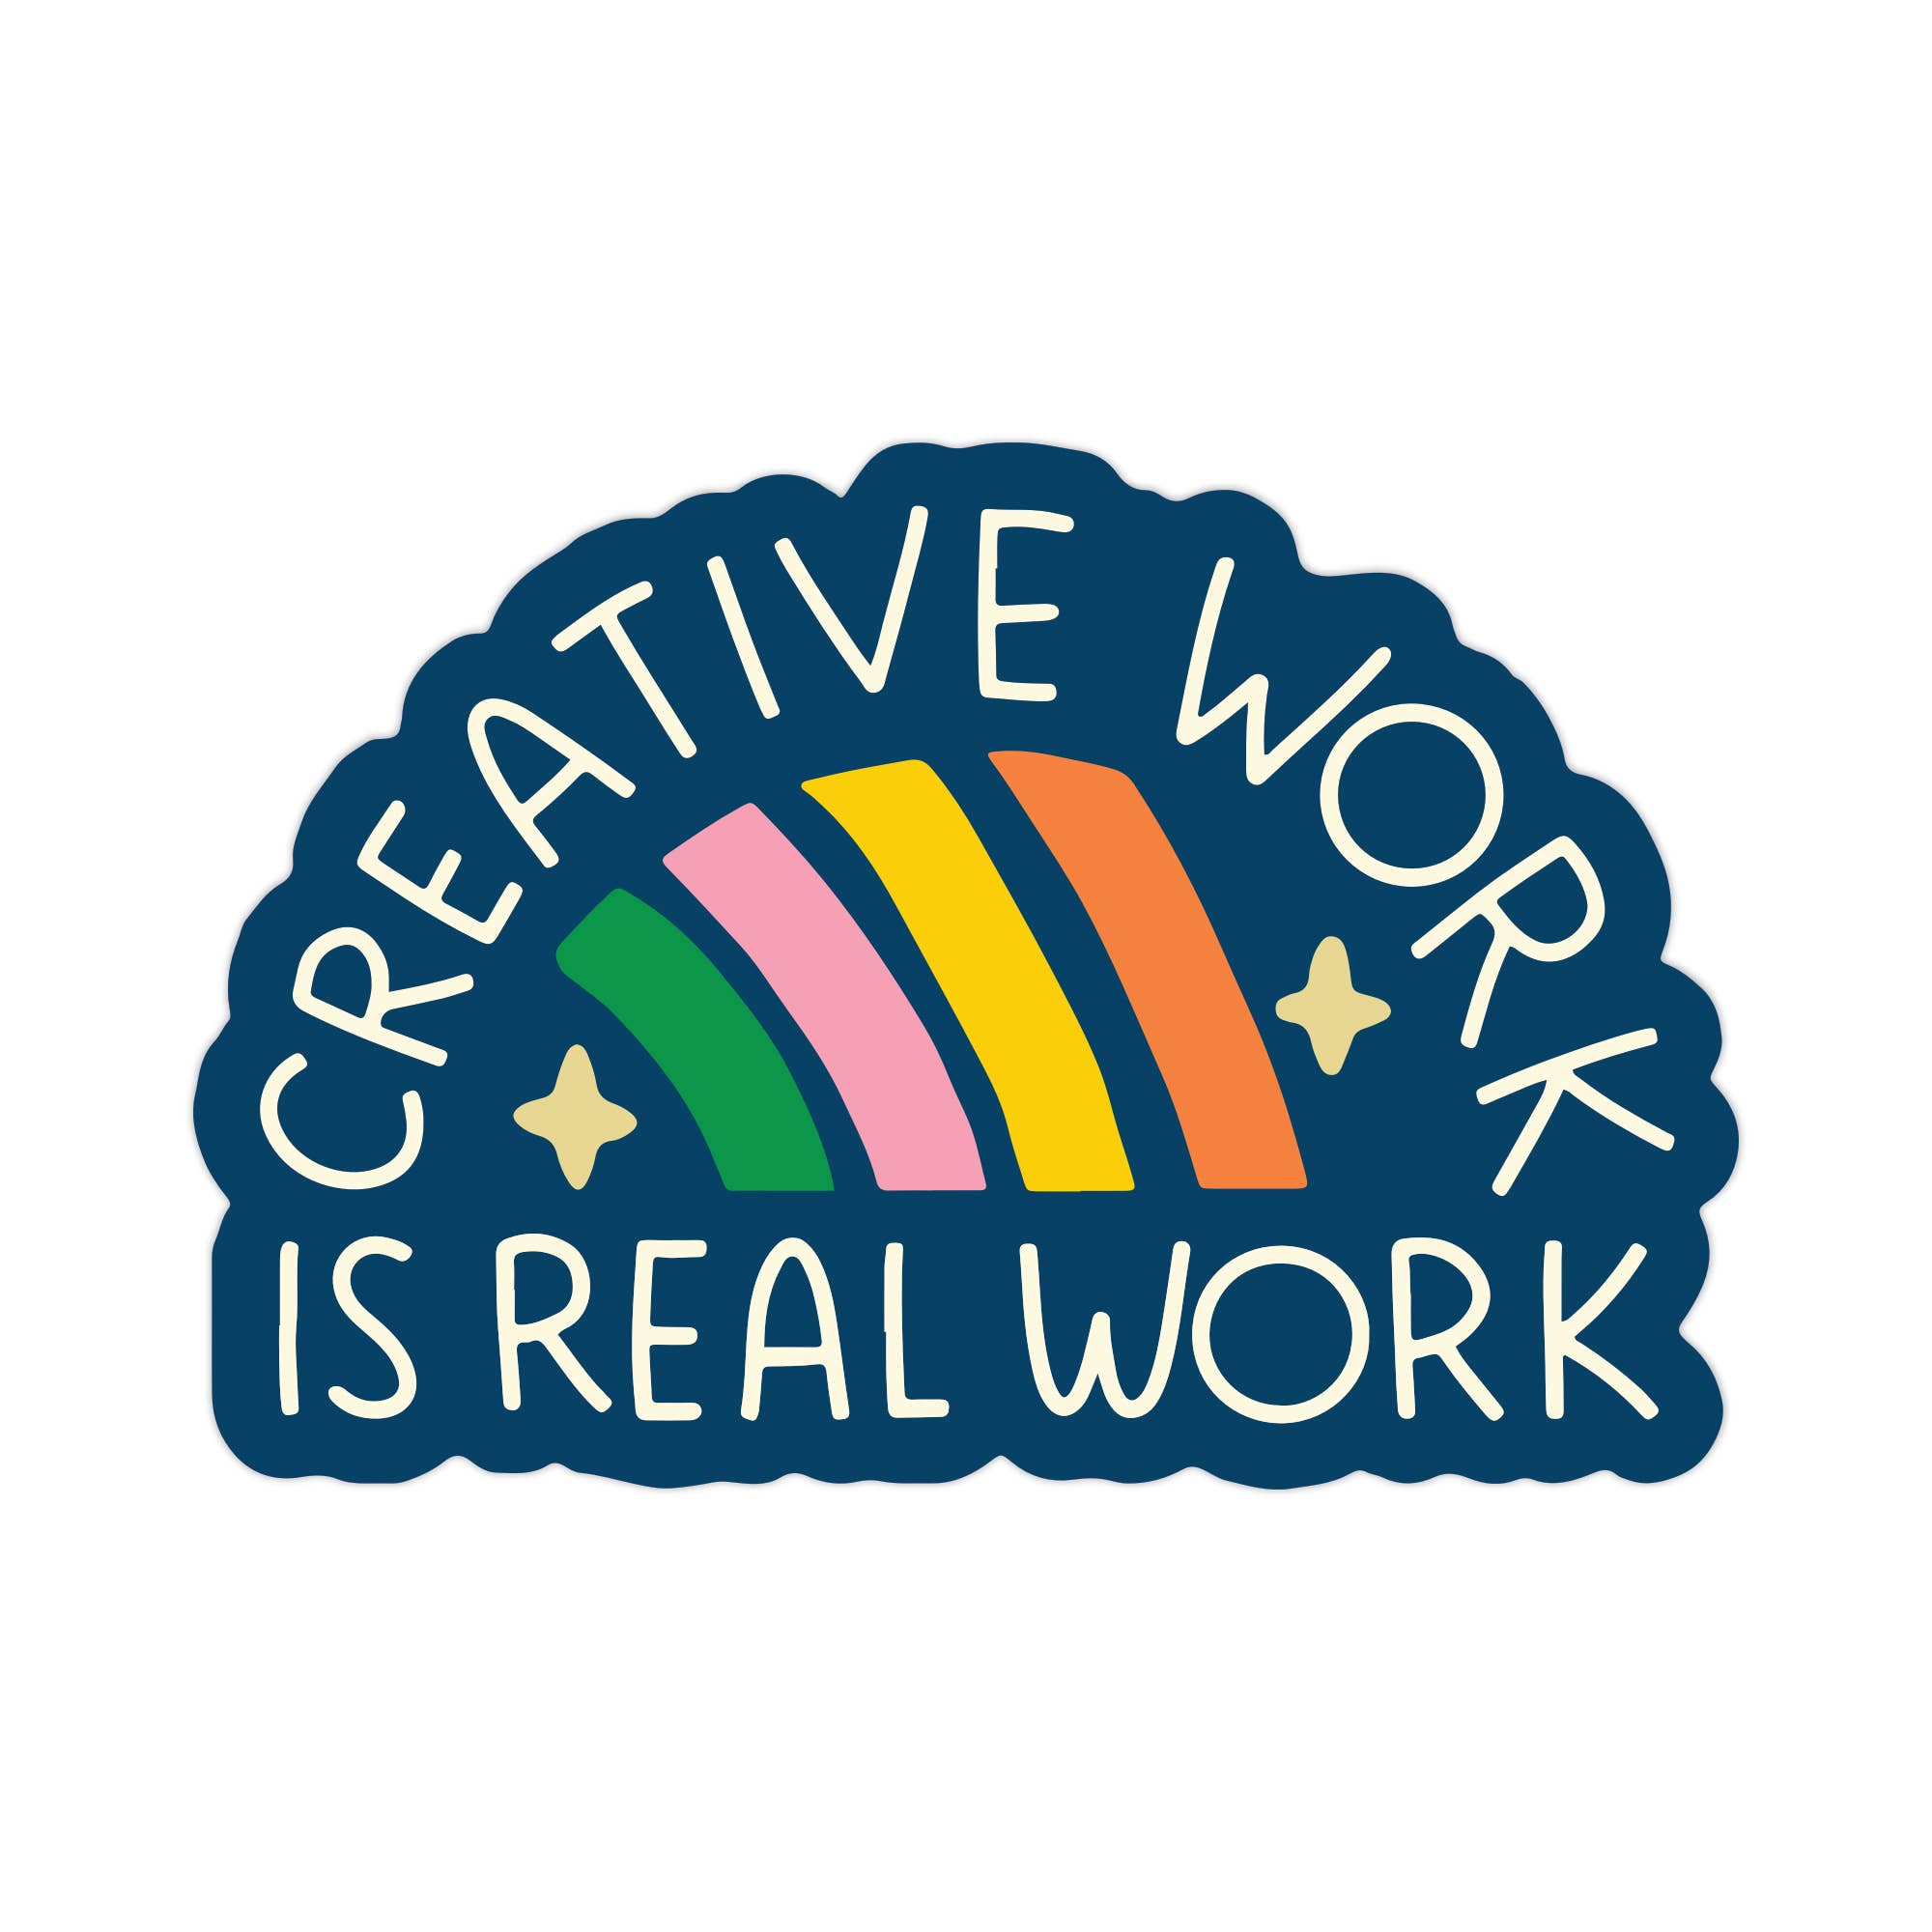 Creative Work Is Real Work Sticker - Spiral Circle